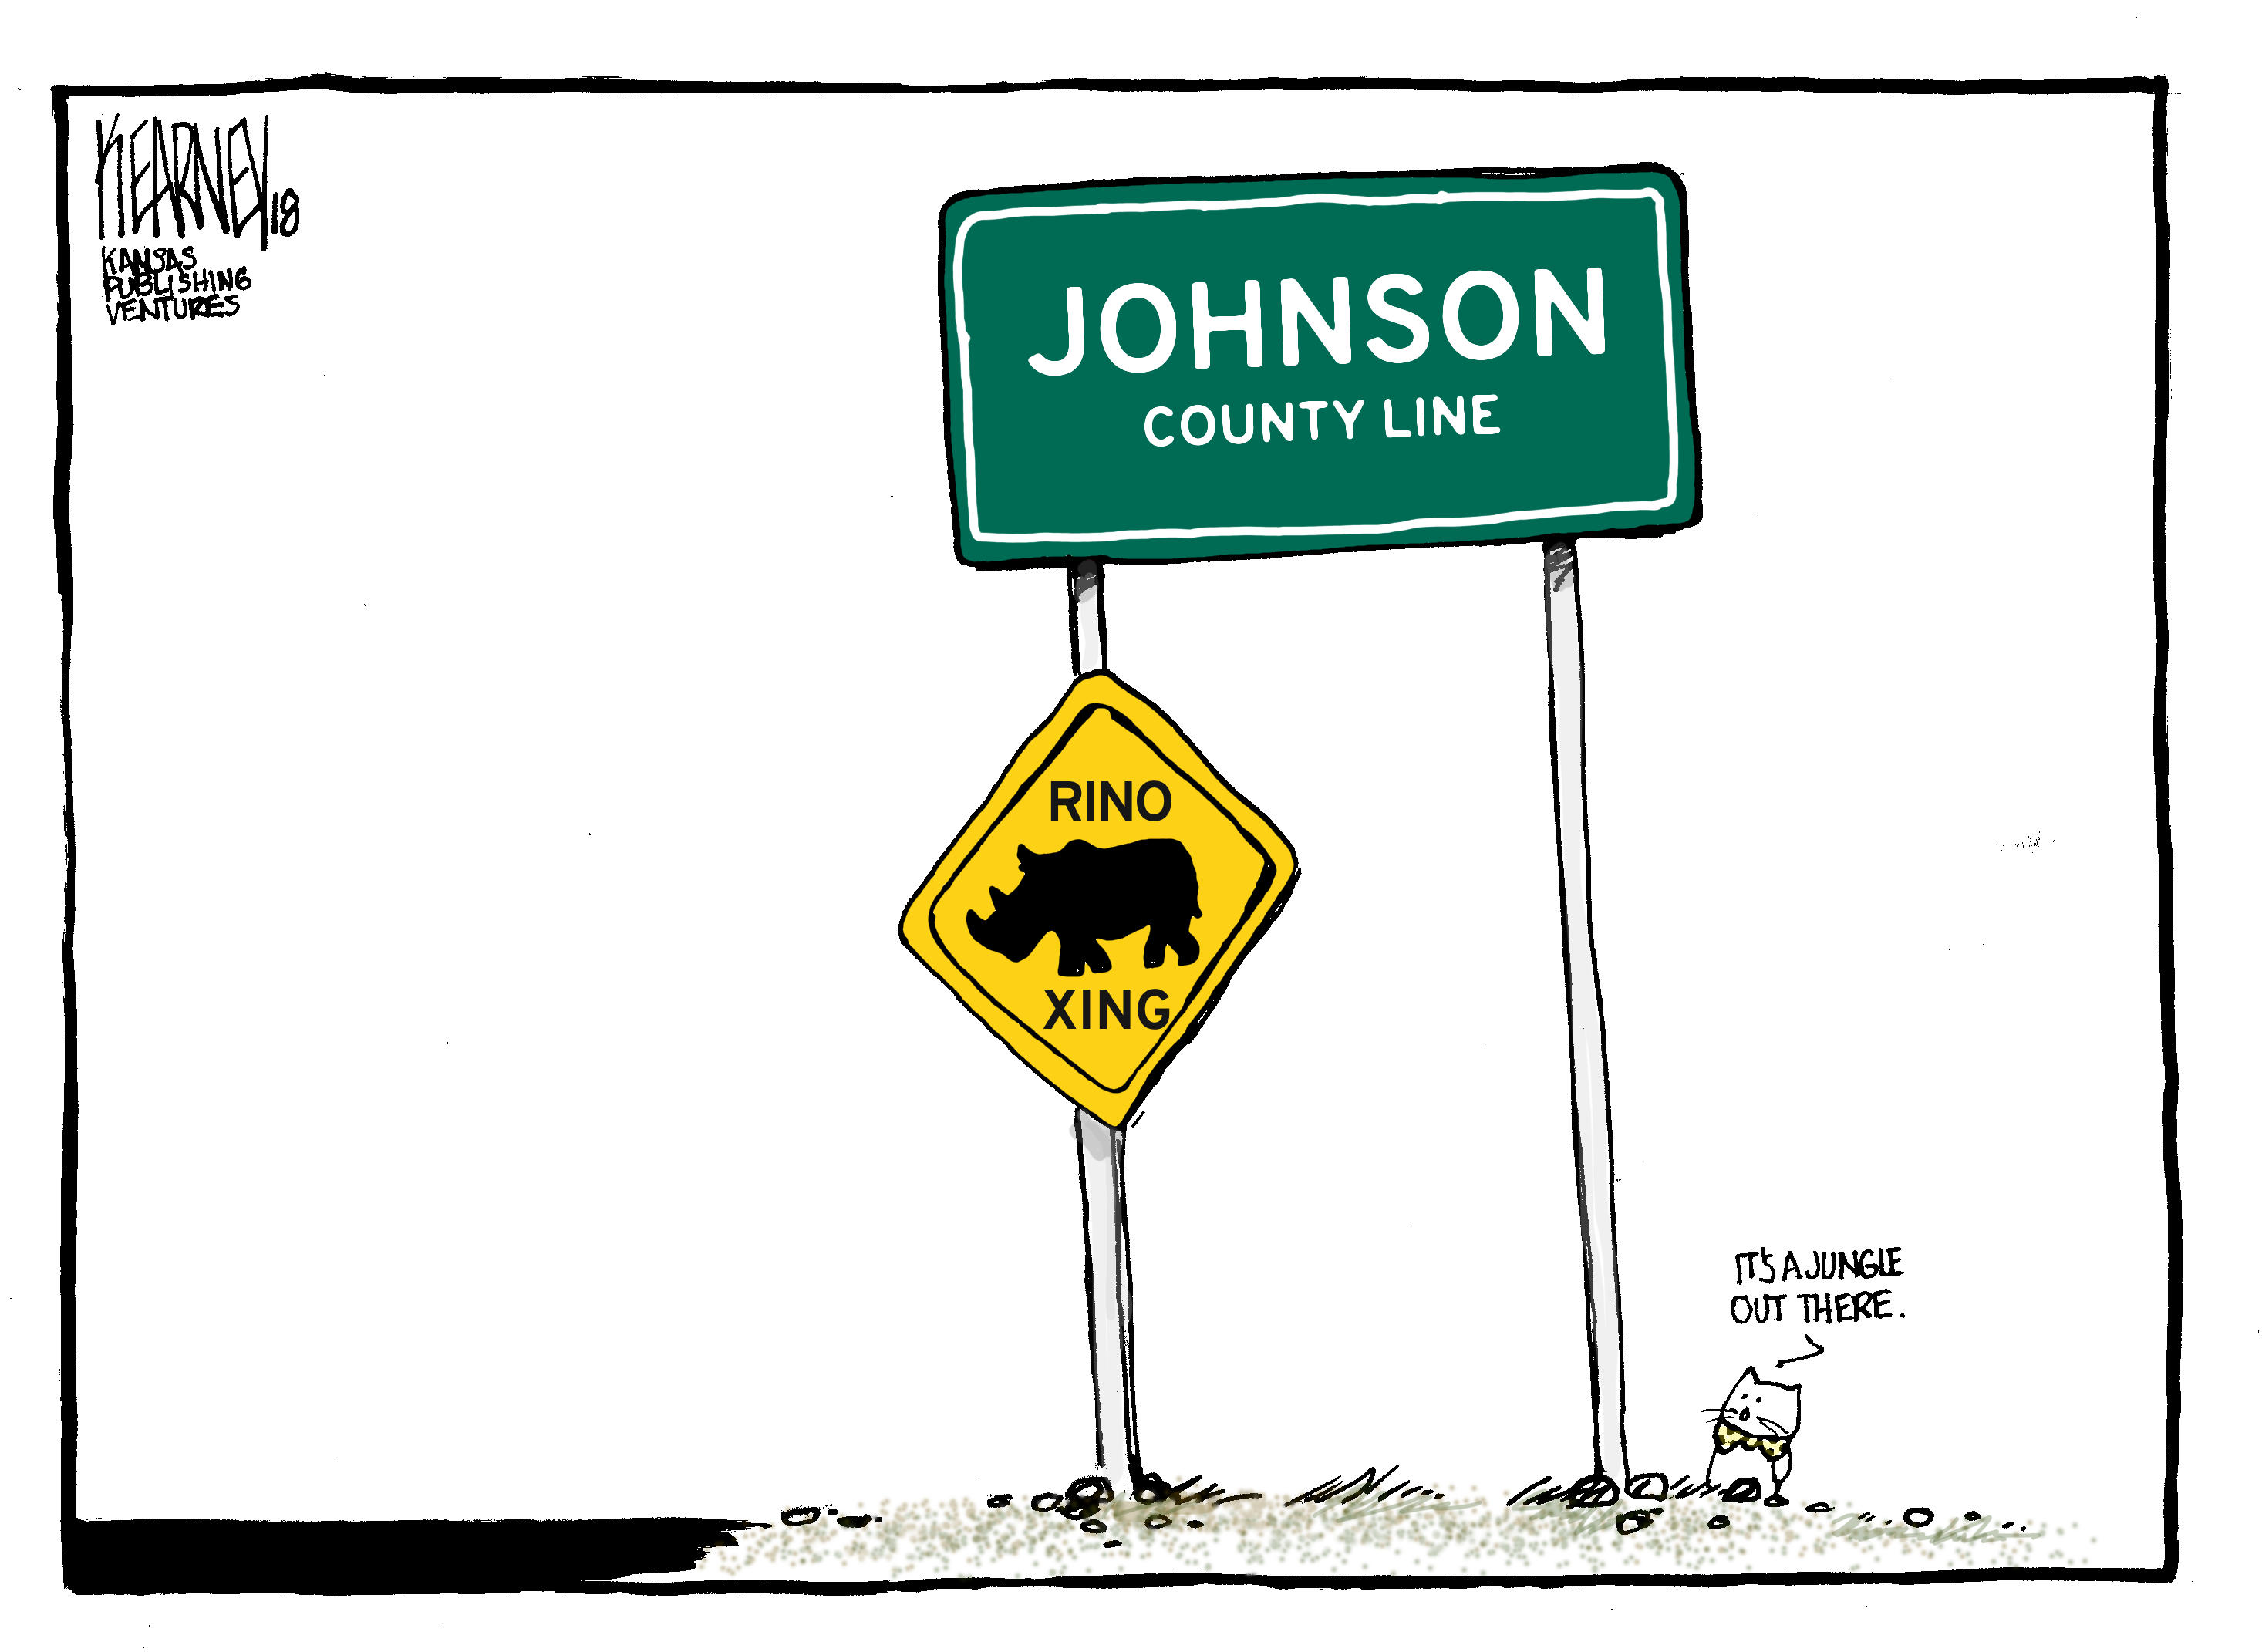 Cartoon Johnson County RINO crossings.